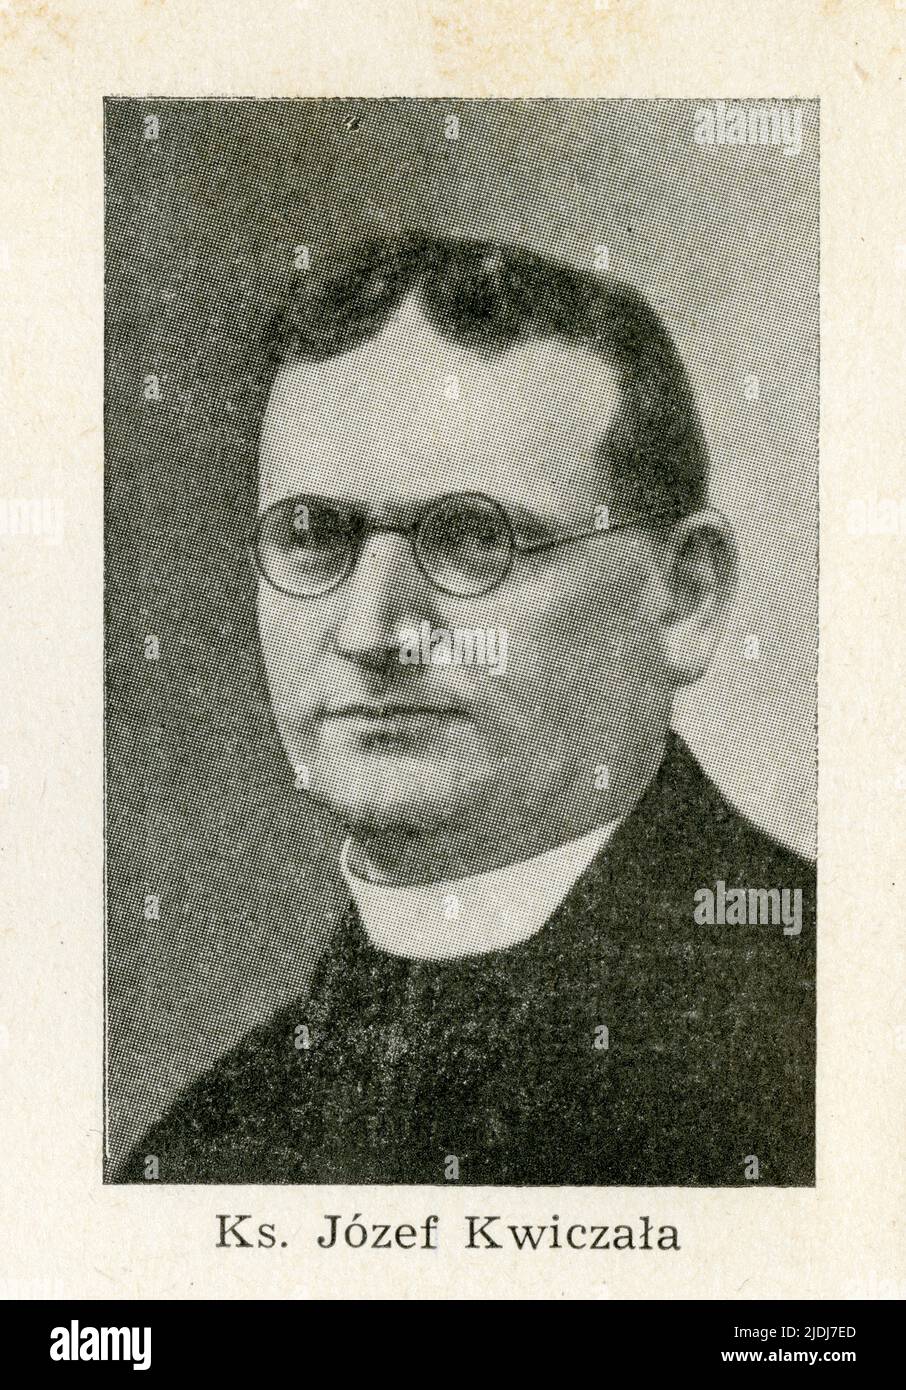 KWICZAŁA JÓZEF prof. dr – ksiadz katolicki. Urodzony 26.07.1889 r. w Kaczycach k. Pogwizdowa, syn Pawła. Po ukończeniu szkoły elementarnej uczęszczał Stock Photo